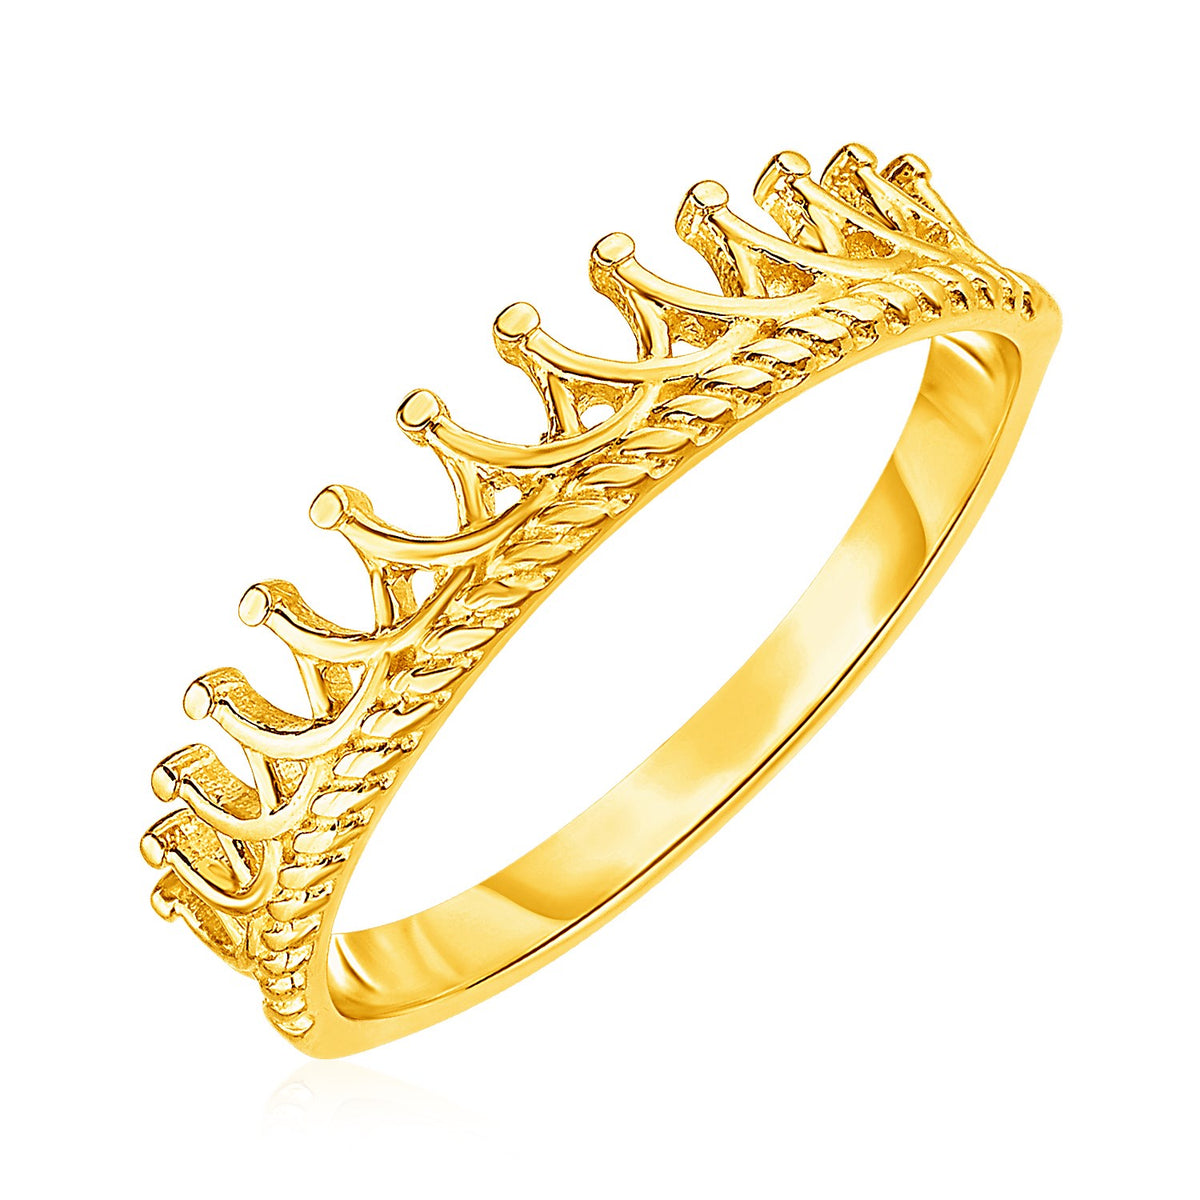 Crown Motif Ring - 14k Yellow Gold